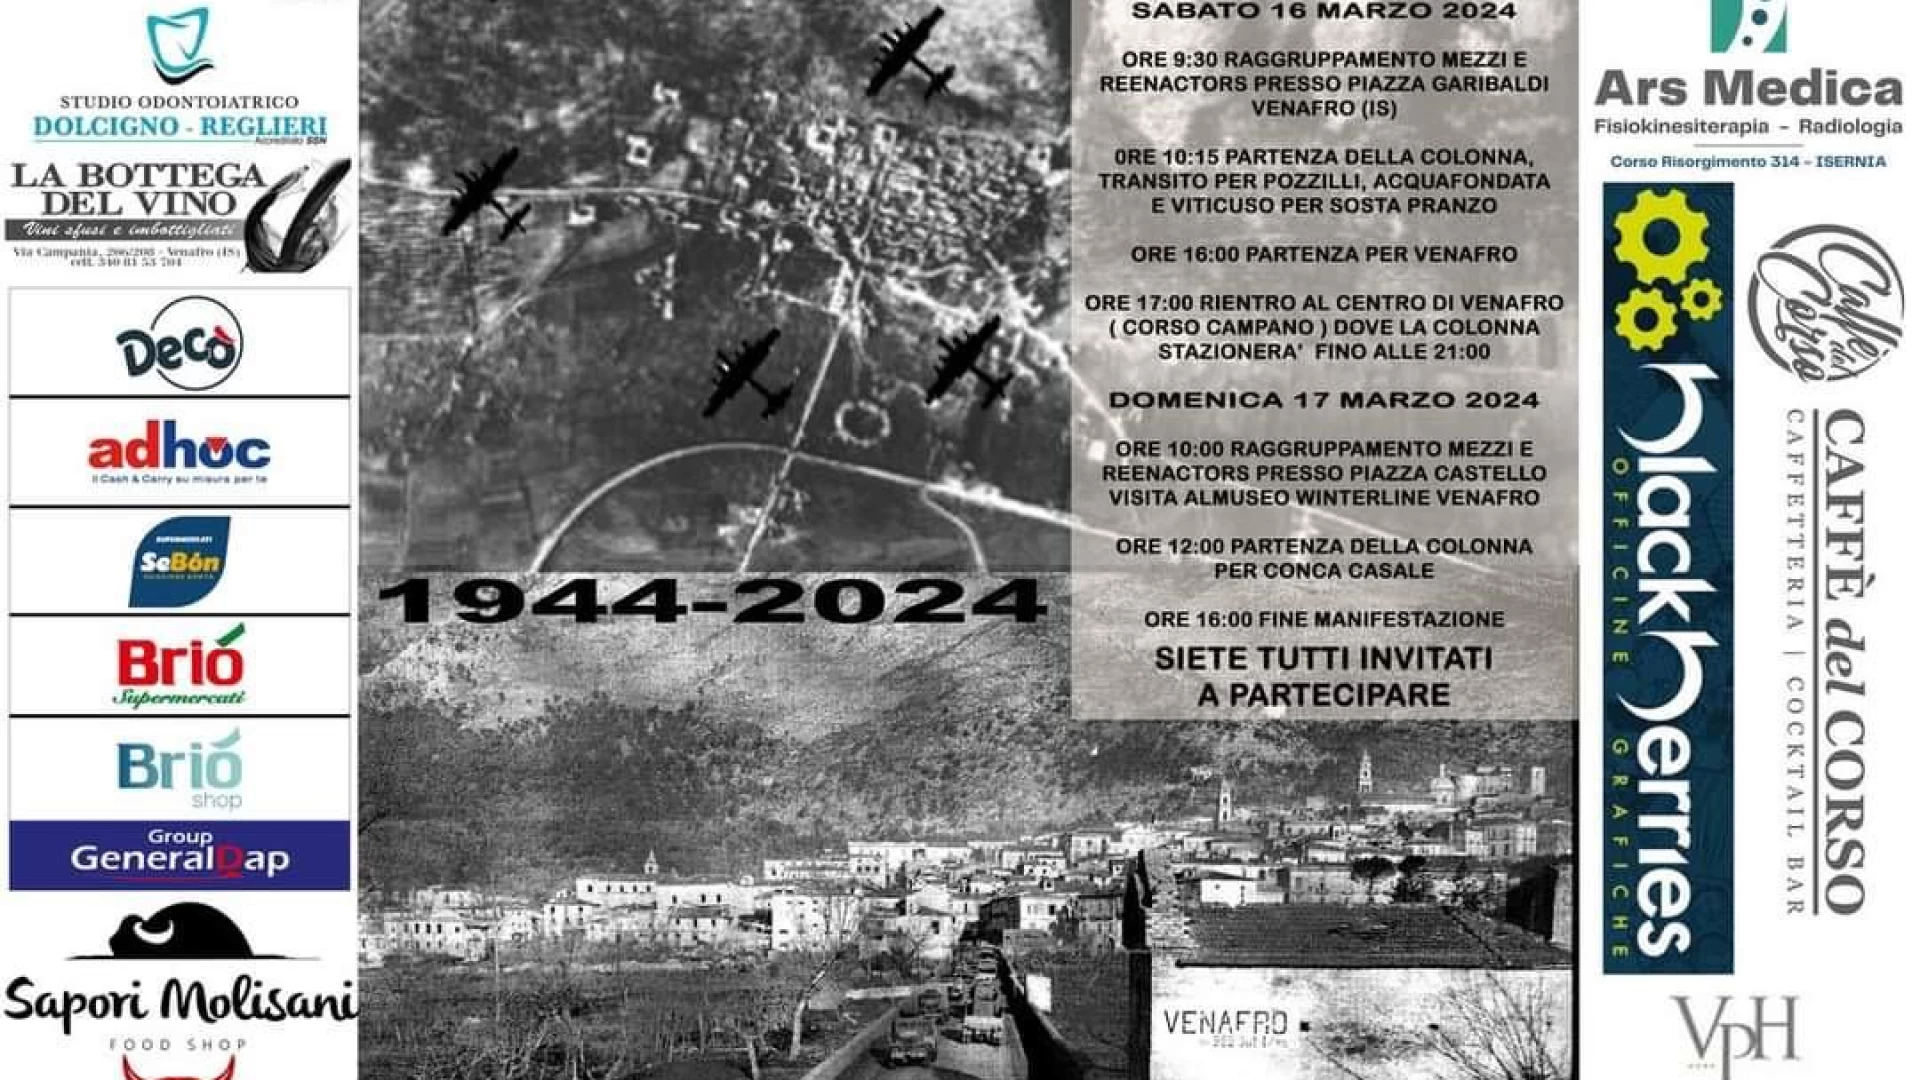 Venafro: week end ricco di evento nel ricordo del bombardamento del 15 marzo 1944. Sono passati ottant’anni da quel tragico evento.